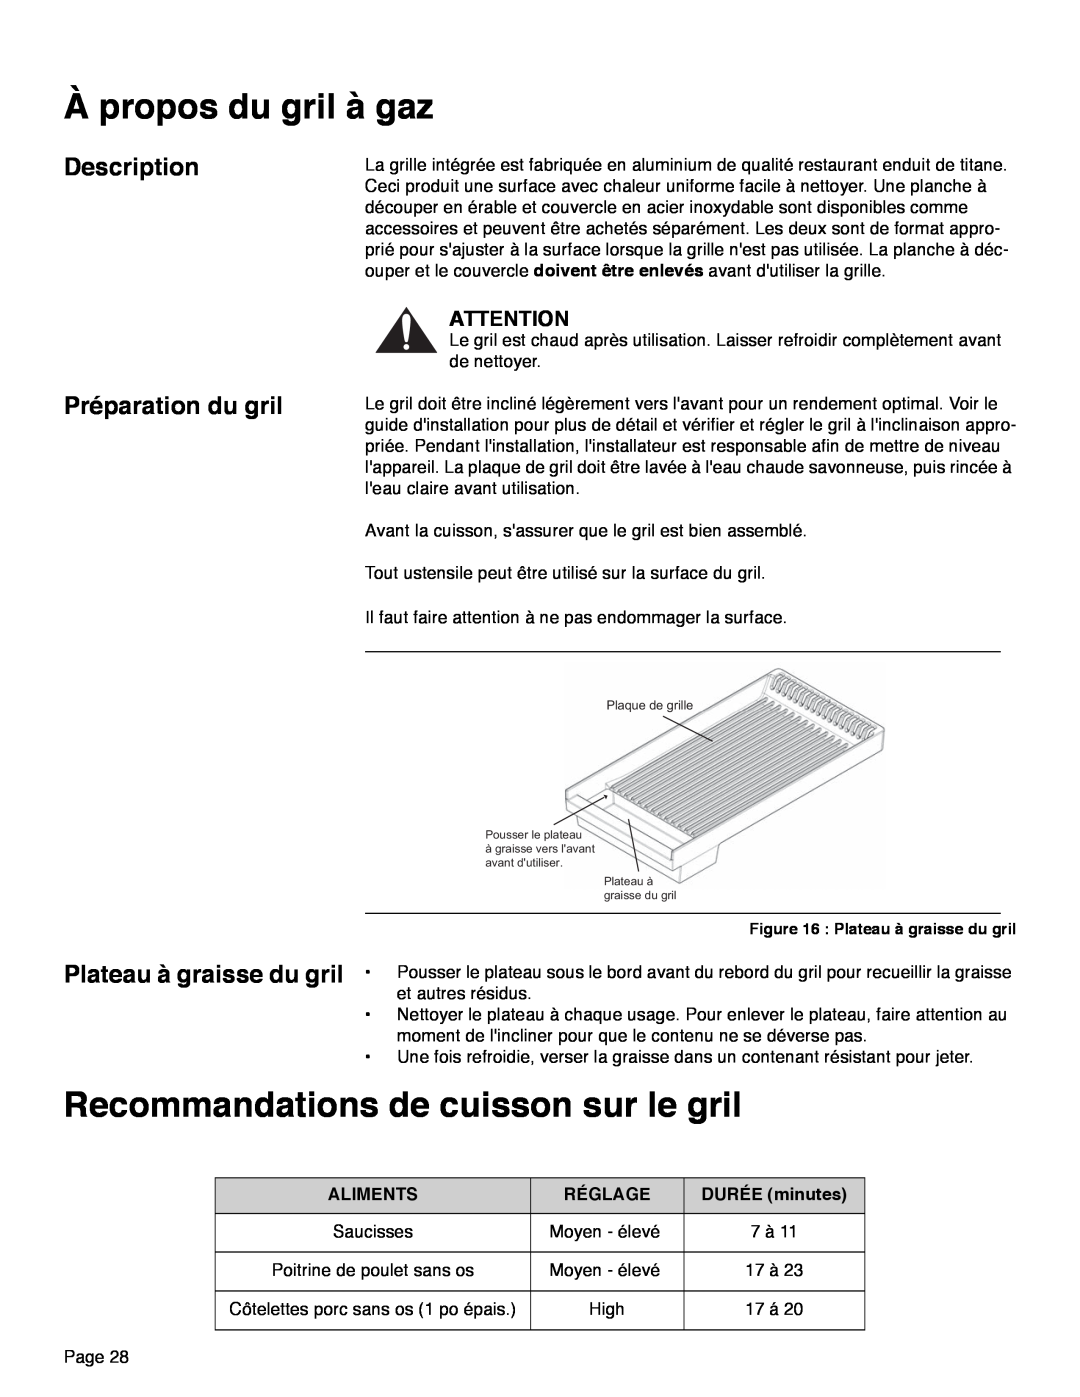 Thermador PRD30, PRD48, PRD36 manual Description, Préparation du gril, DURÉE minutes, Plaque de grille Pousser le plateau 